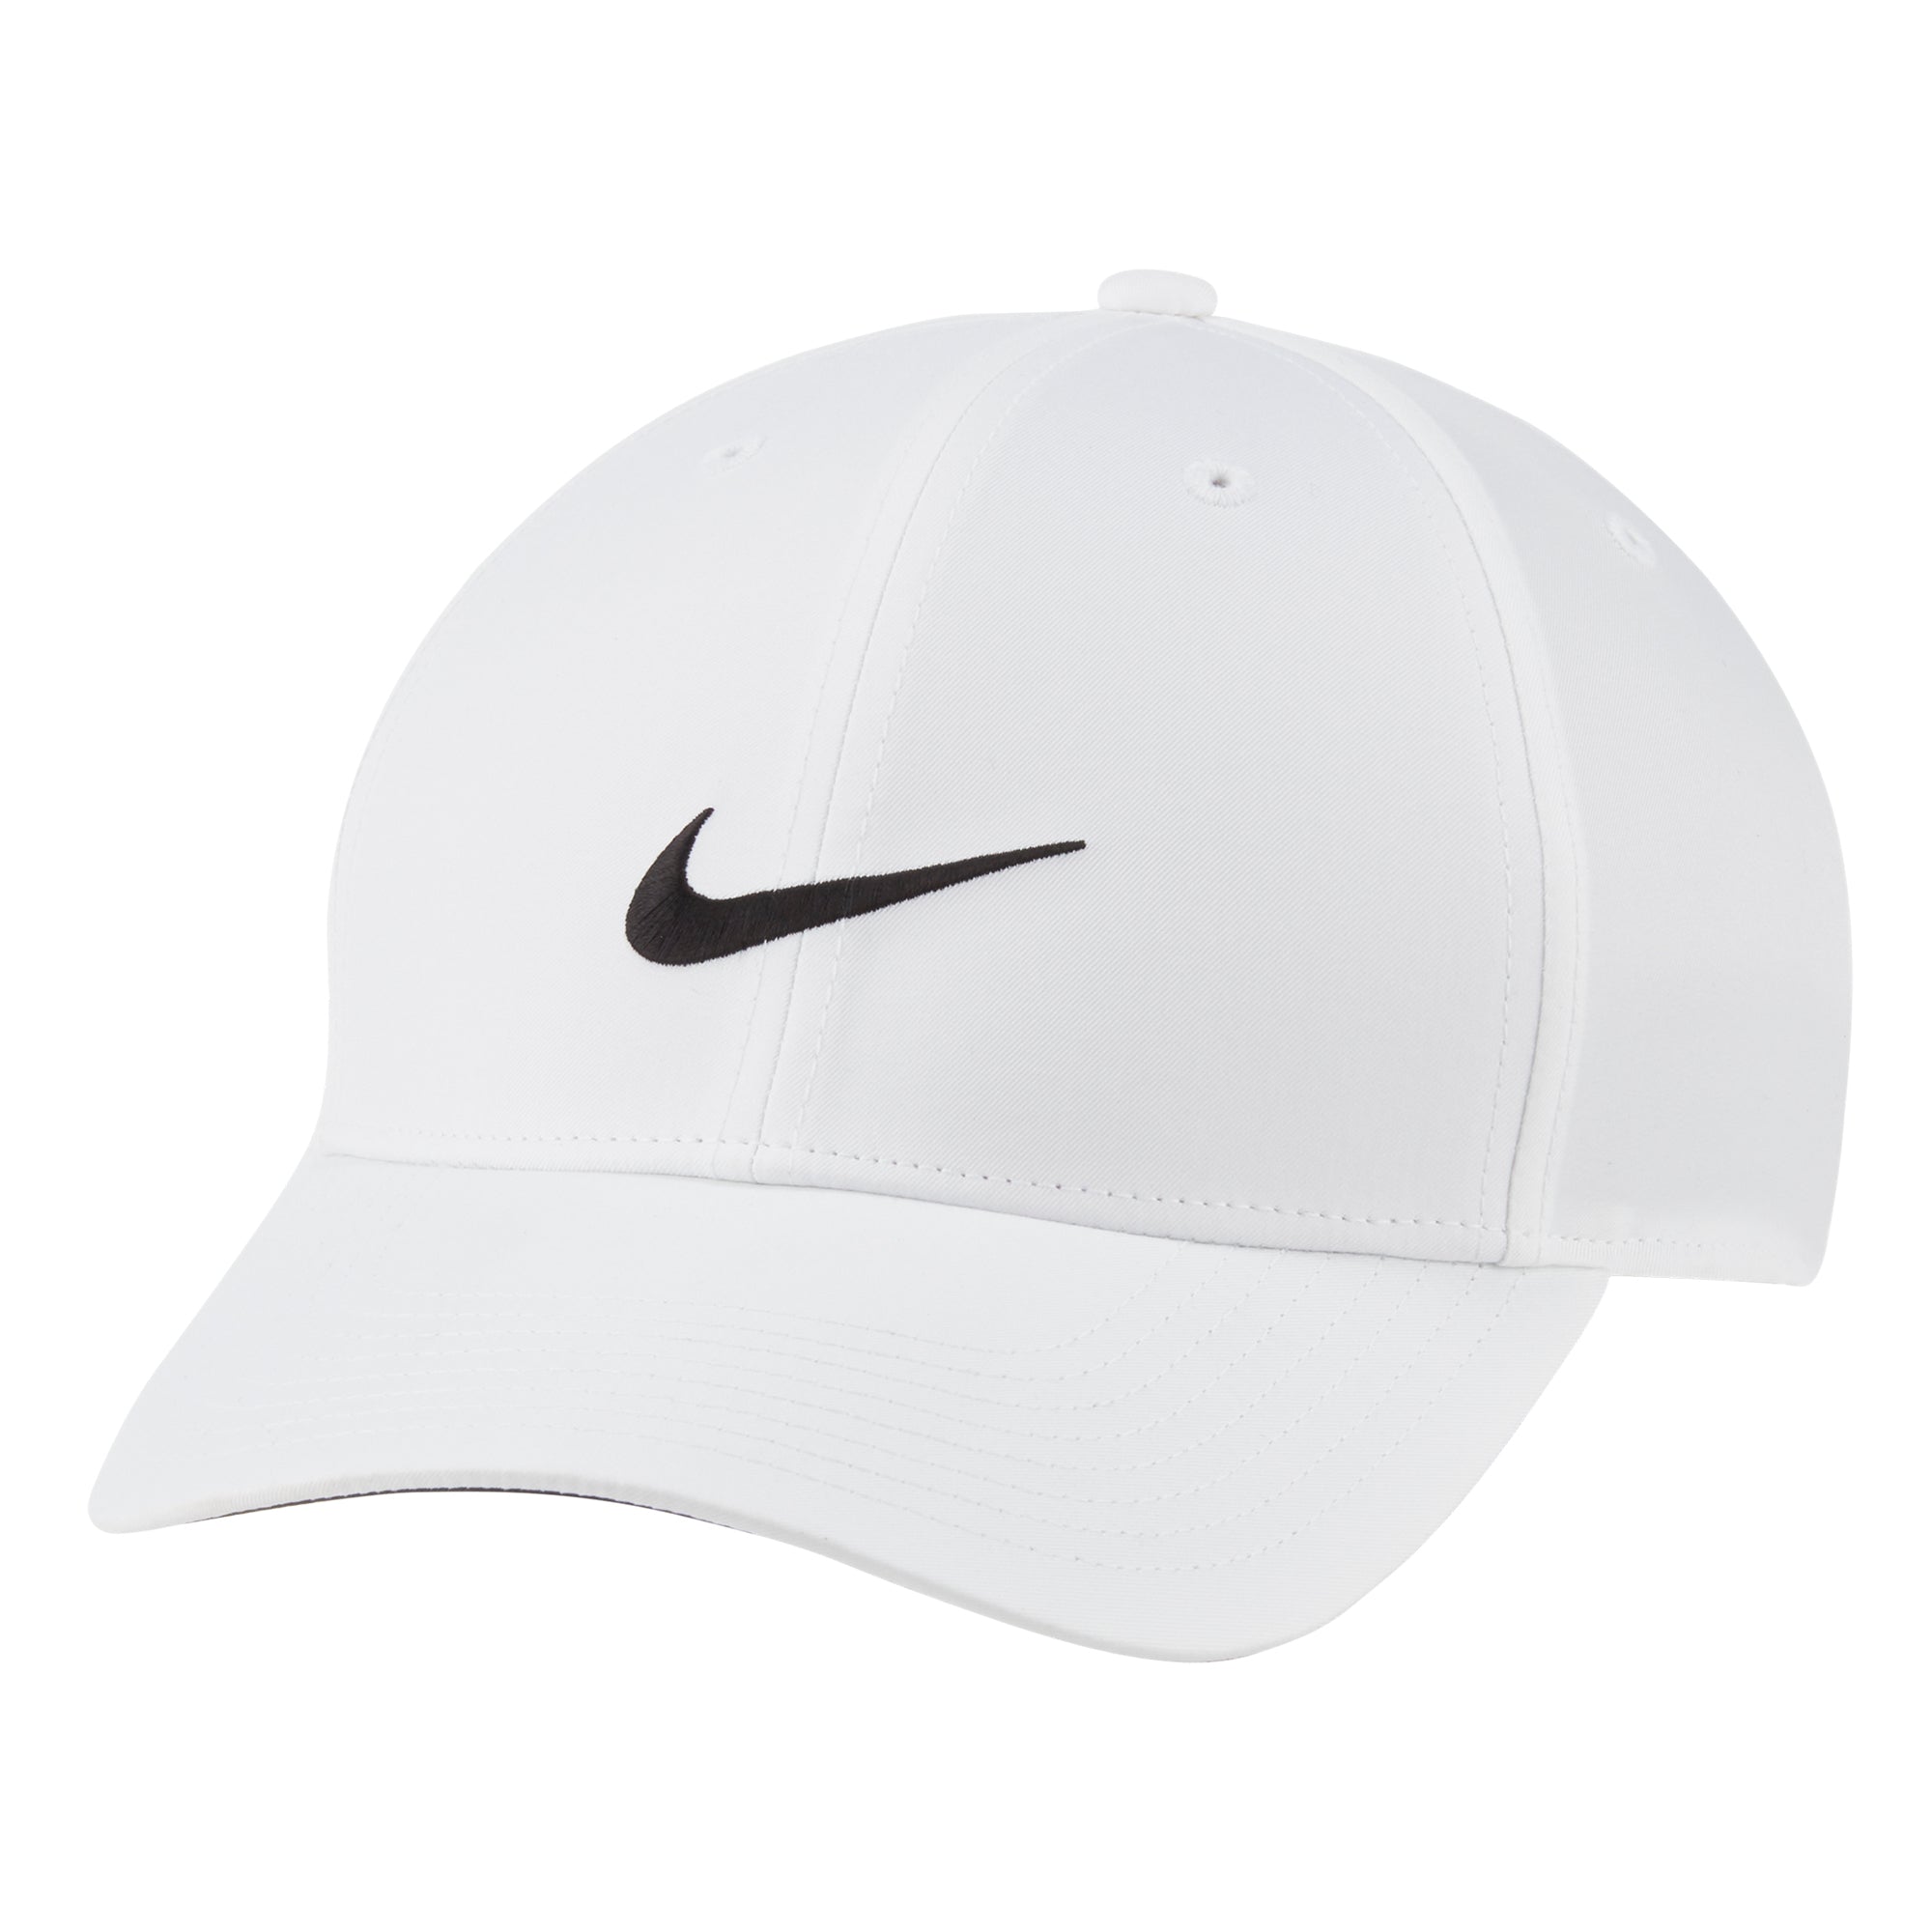 Nike Golf Legacy 91 Tech Cap